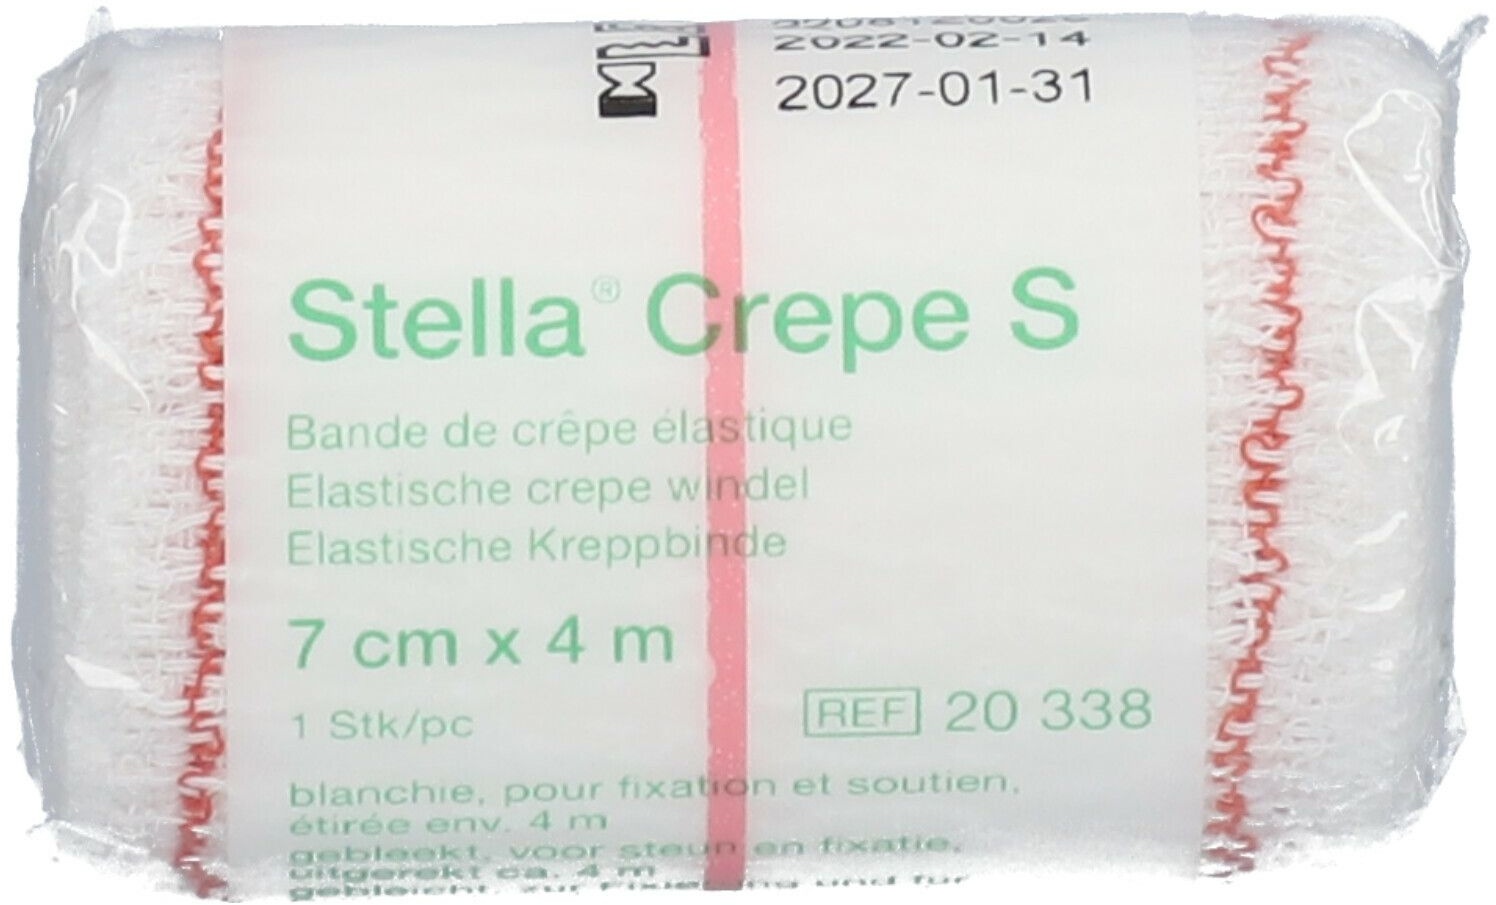 Stella® Crepe S Bande de crêpe élastique 7 cm x 4 m 1 pc(s) bande(s) de gaze